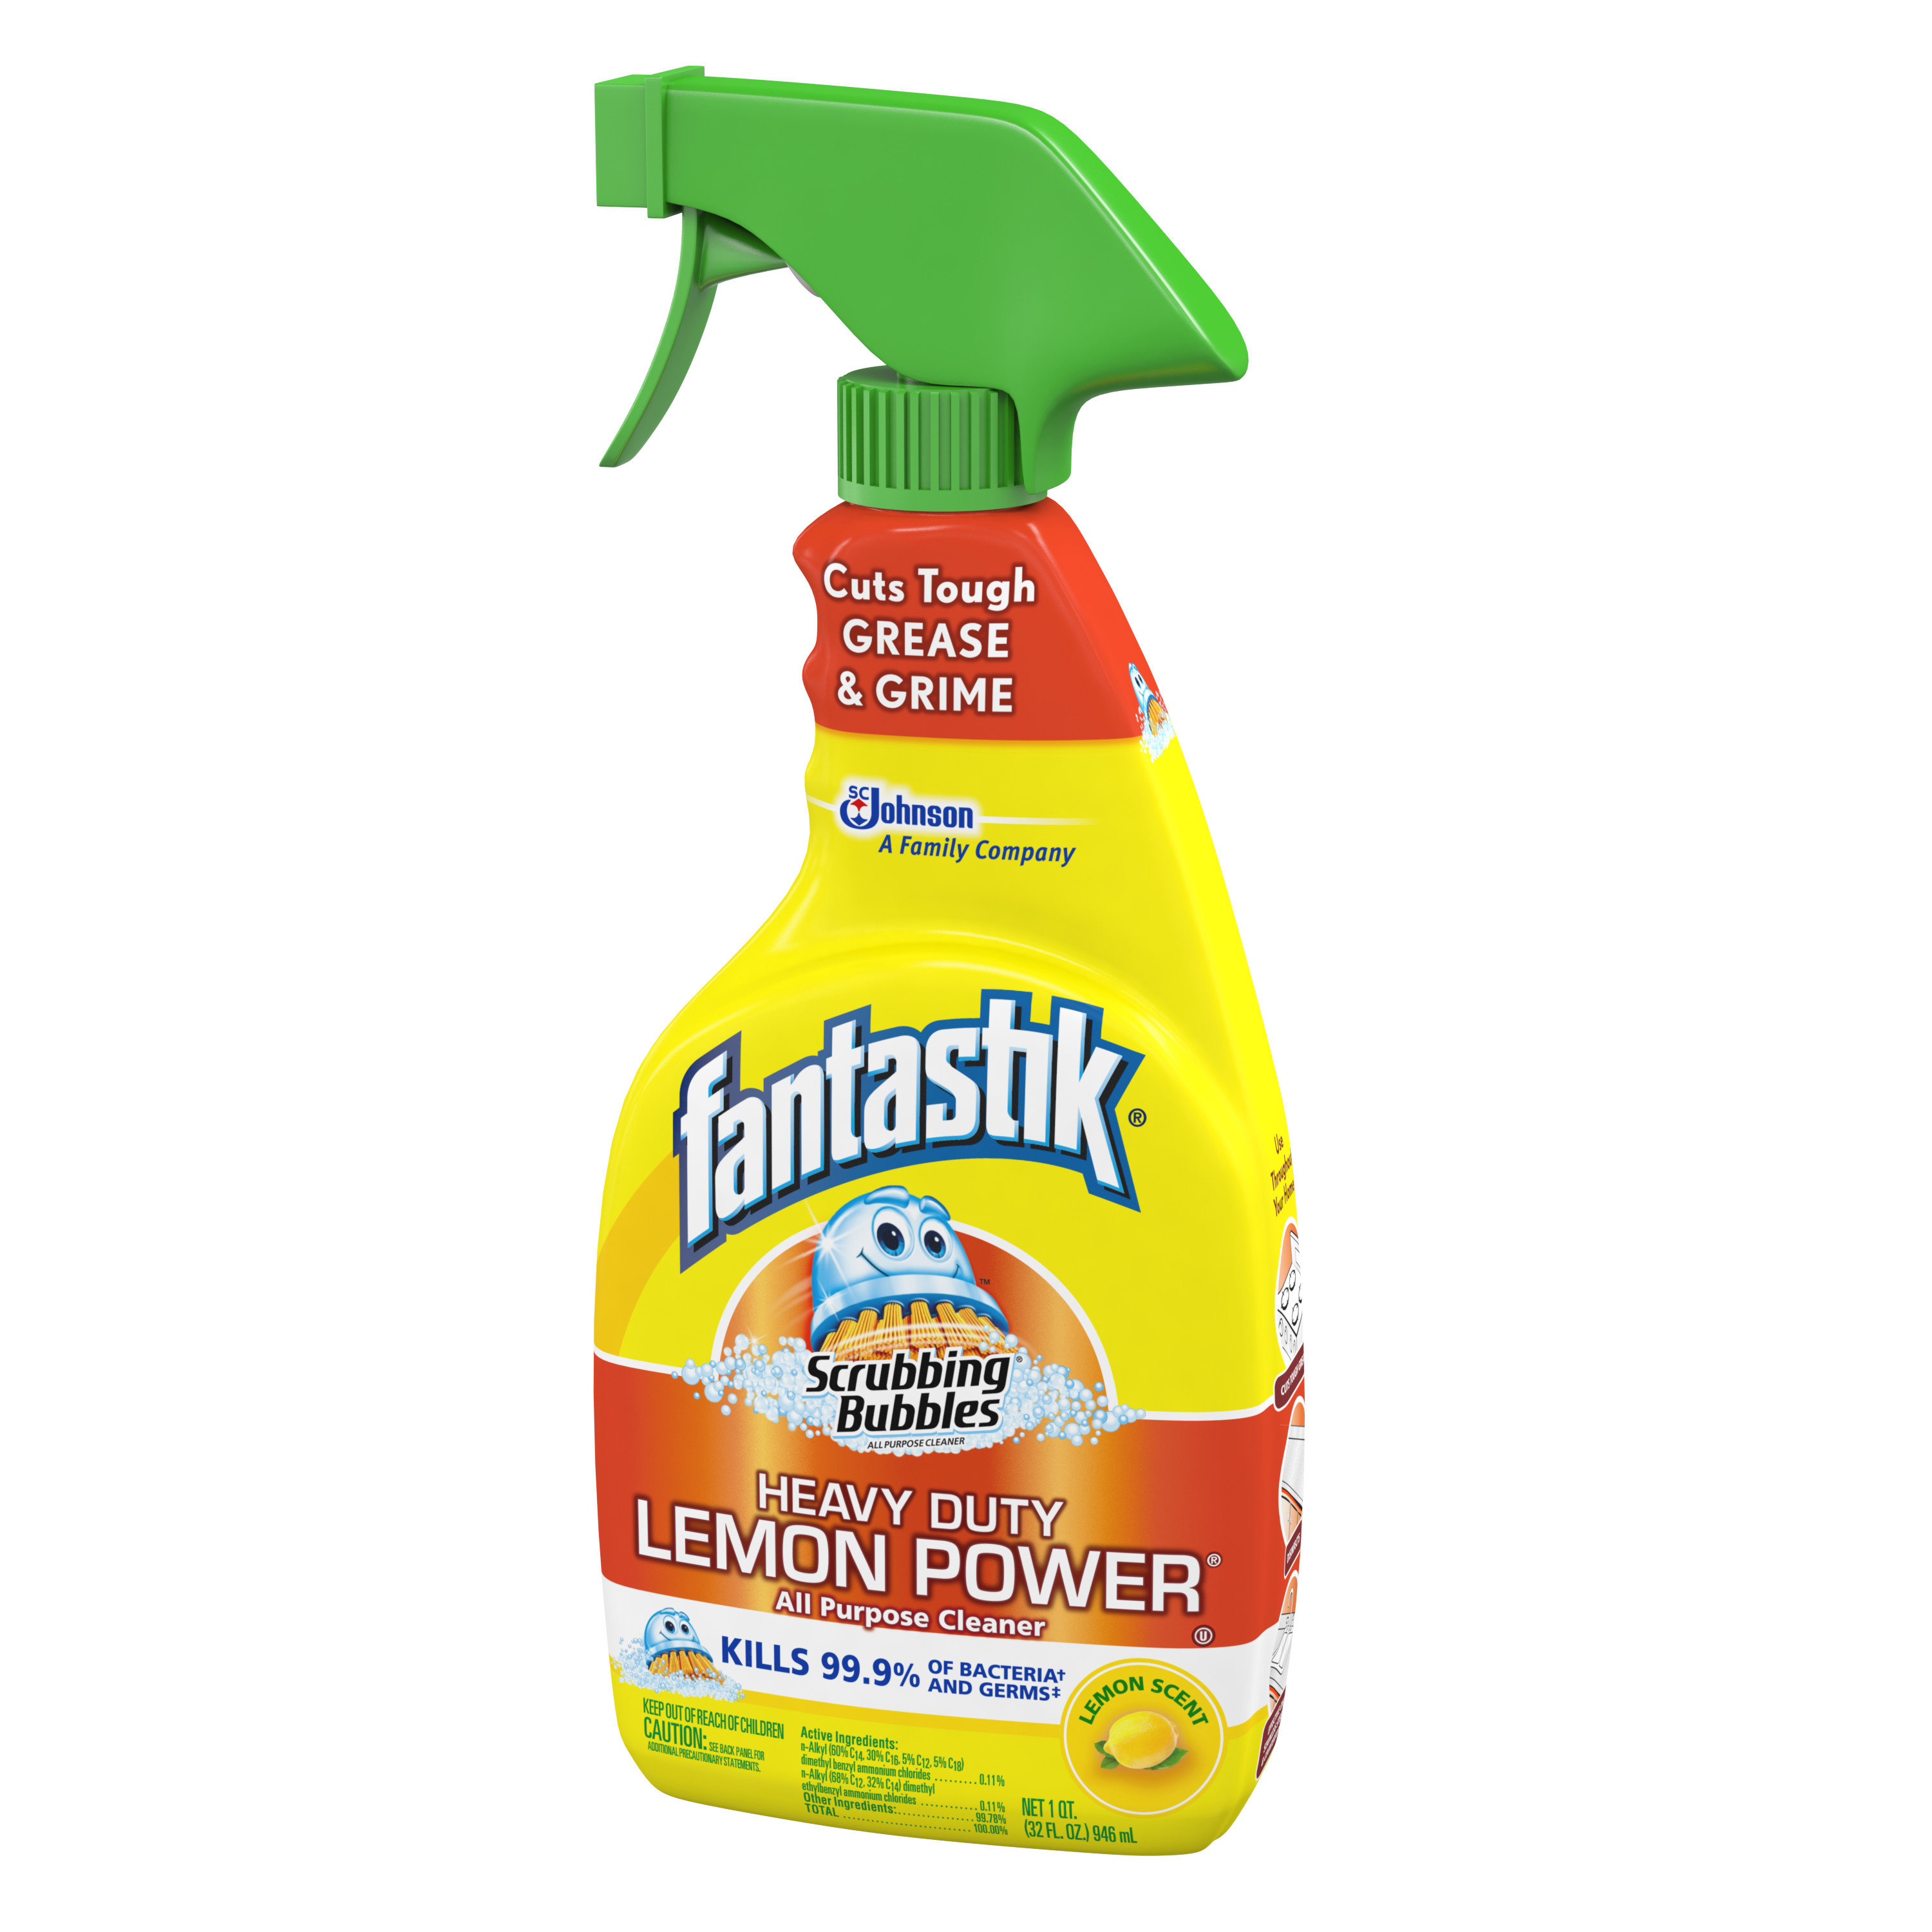 Scrubbing Bubbles All Purpose Cleaner Lemon Power with fantastik Trigger, Lemon Scent, 32 Fluid Ounces - image 2 of 4